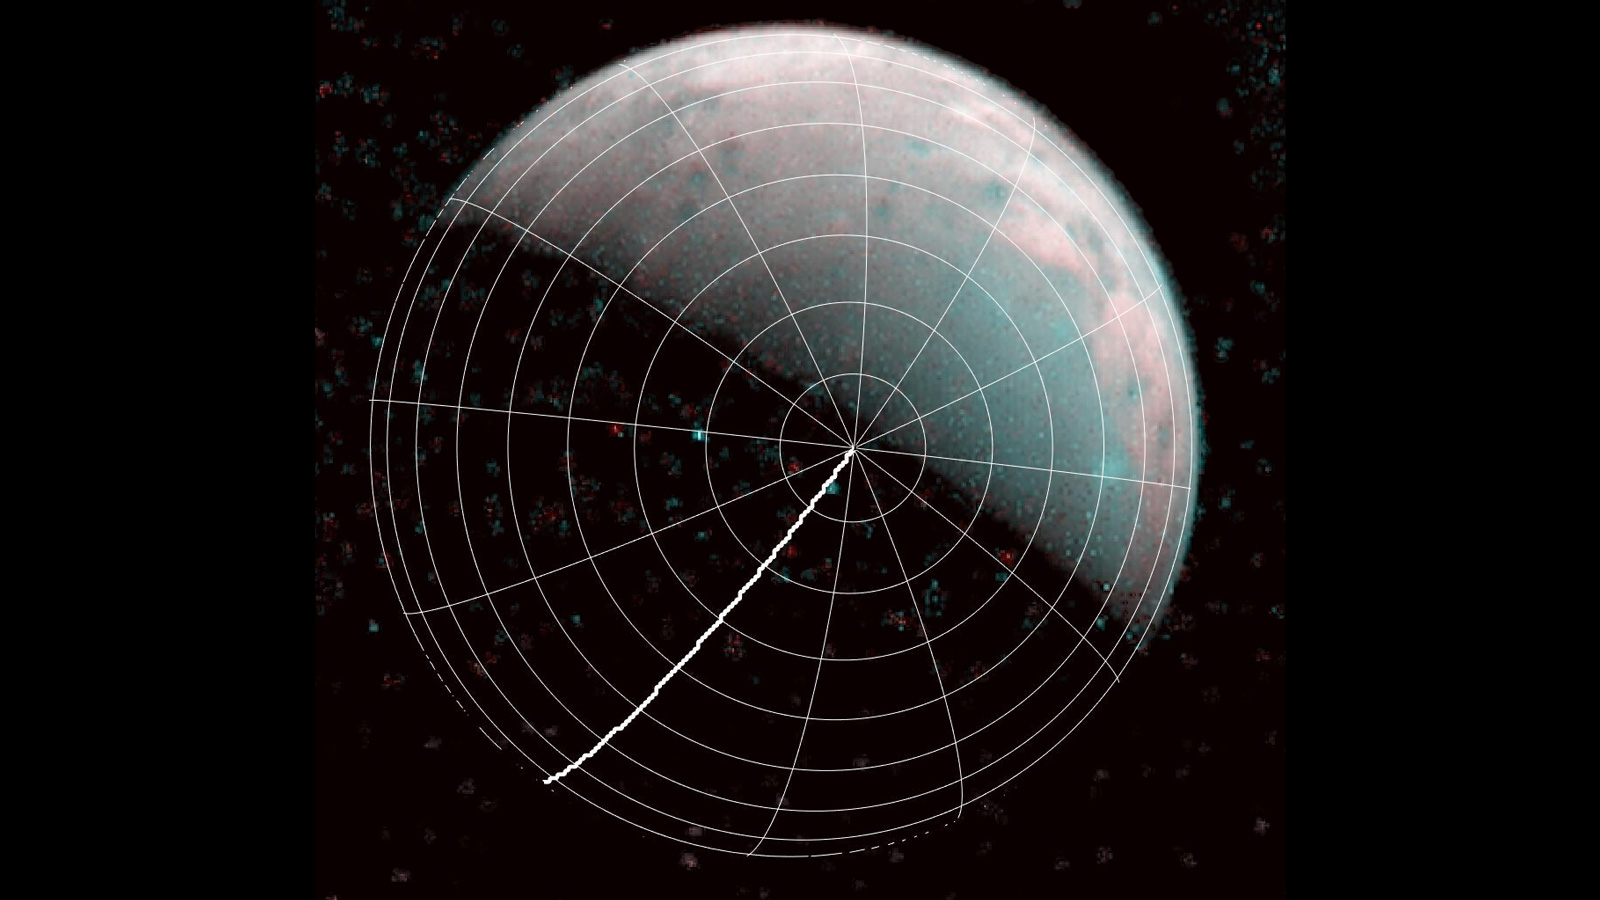 Finalmente observan a Ganímedes, una «bola de nieve» más grande que Mercurio que podría tener vida